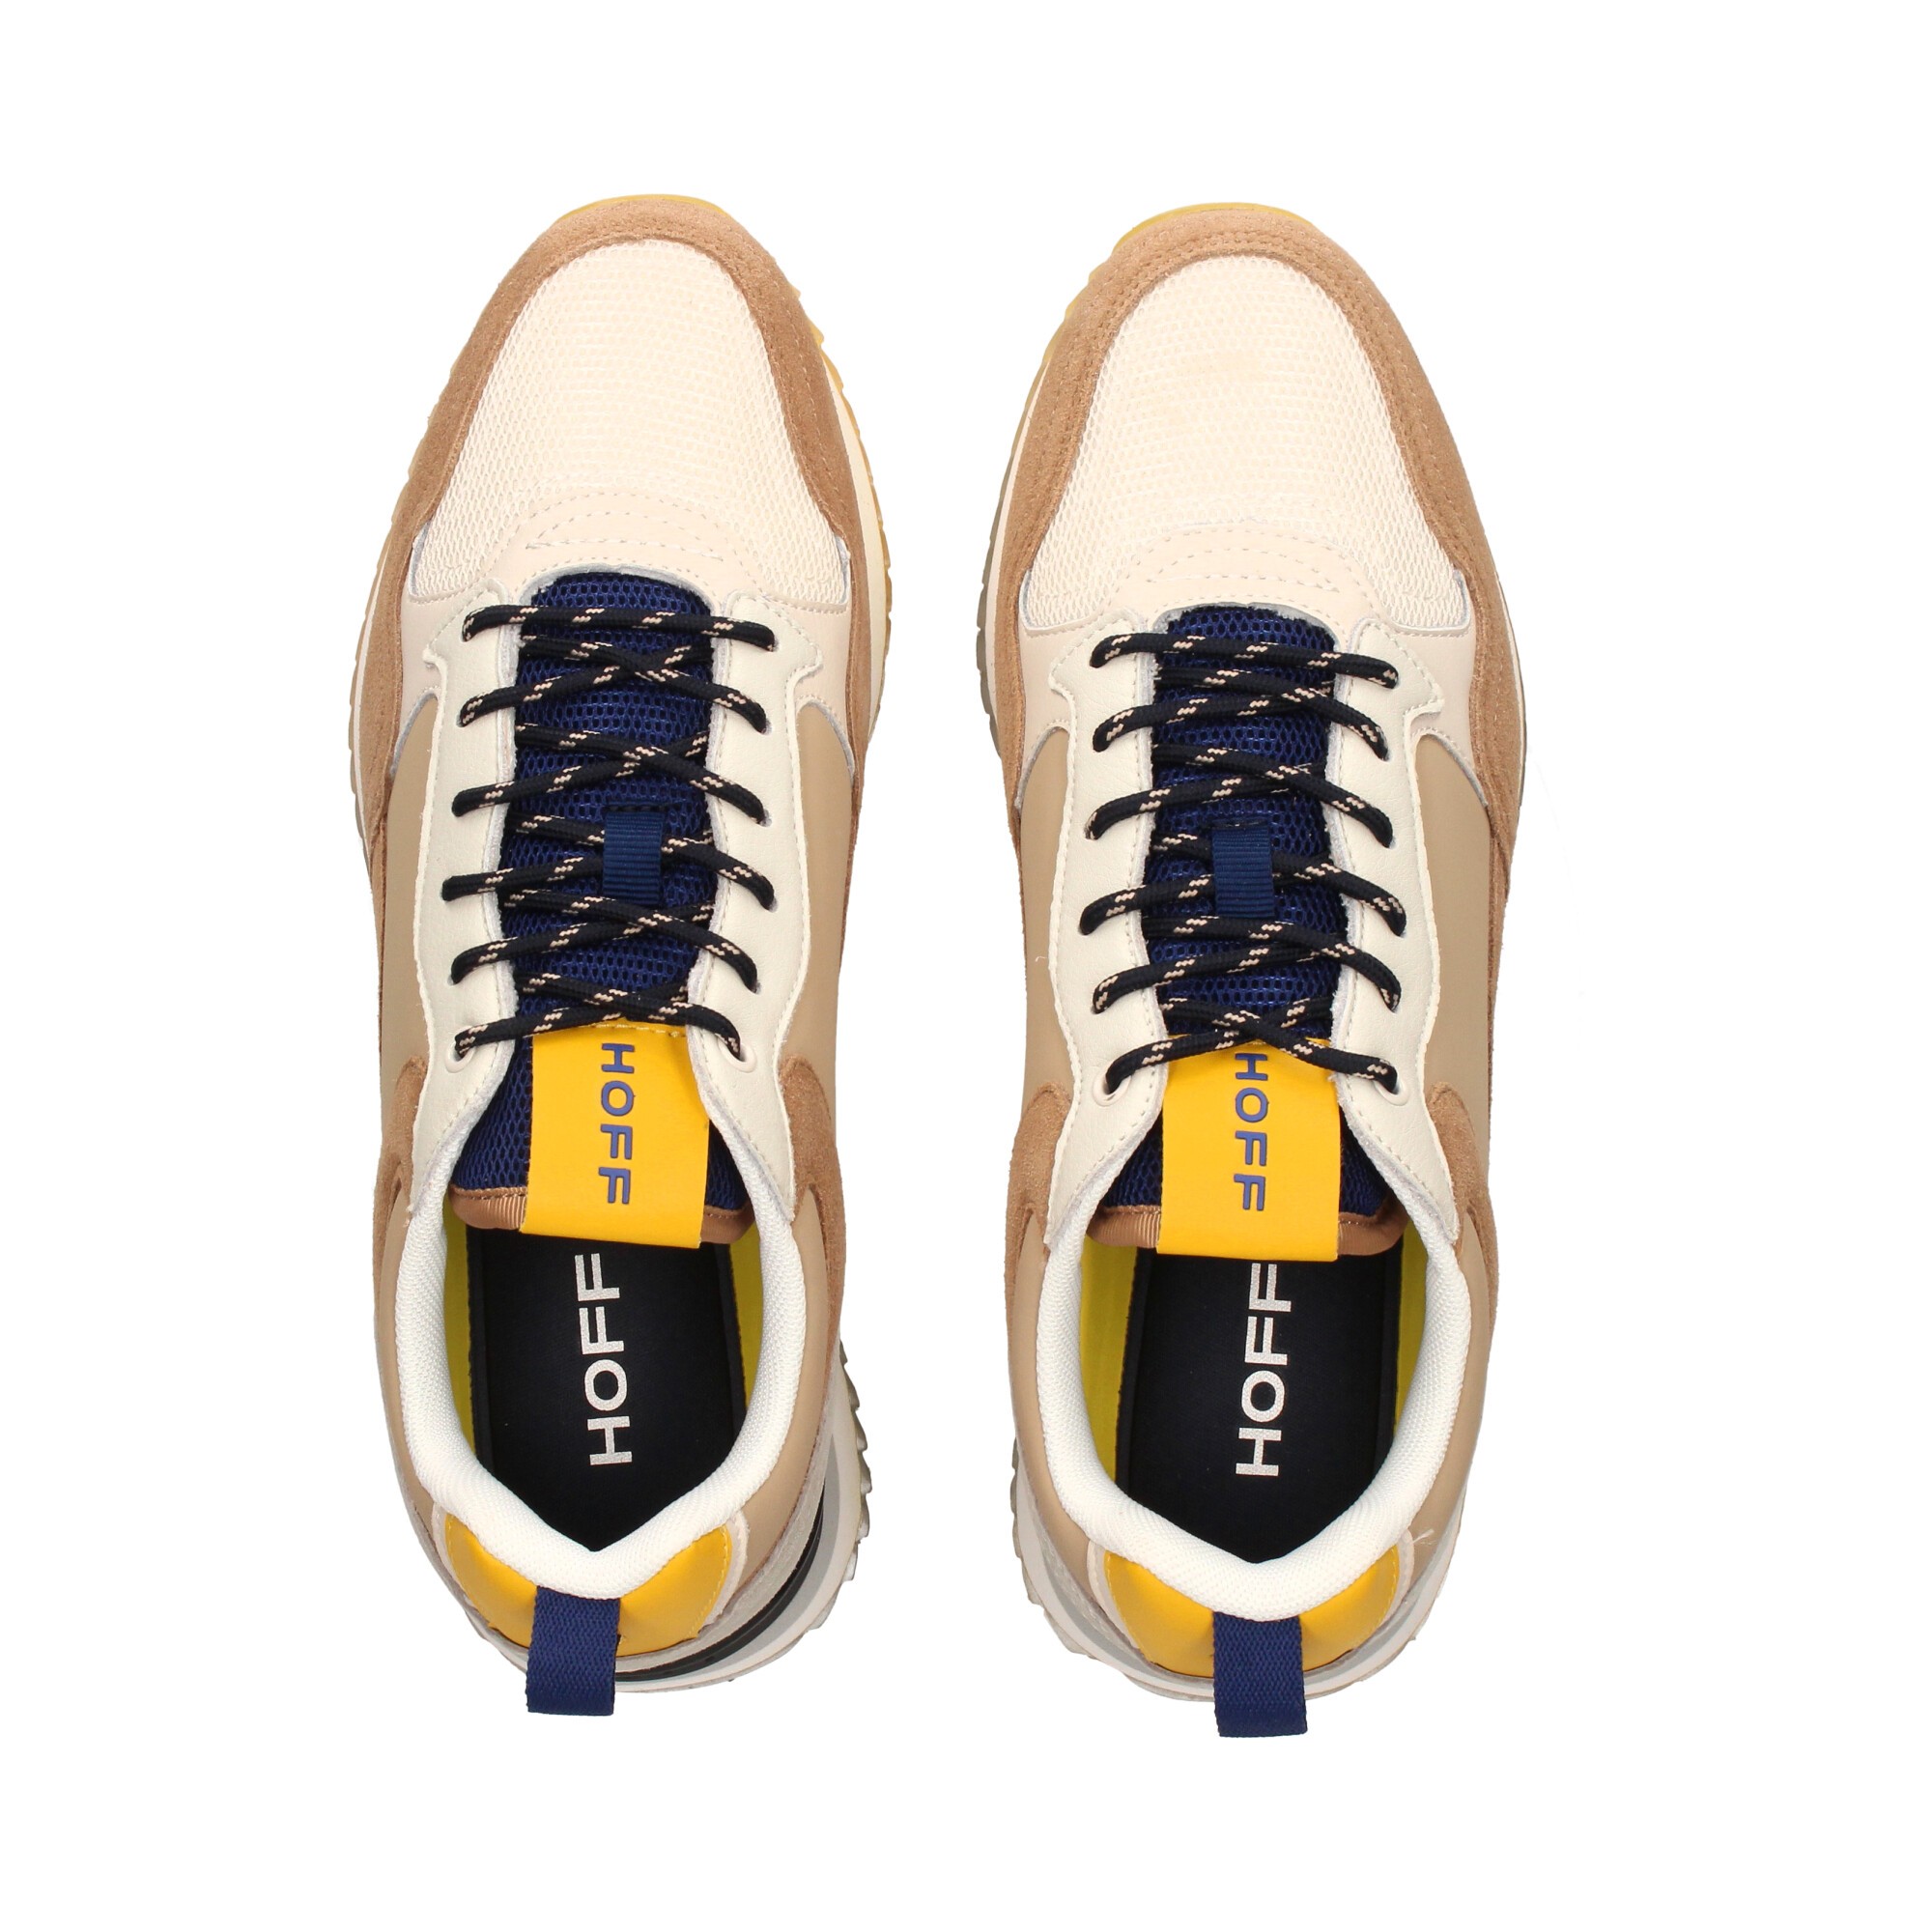 HOFF para Hombre - Tienda Esdemarca calzado, moda y complementos - zapatos  de marca y zapatillas de marca